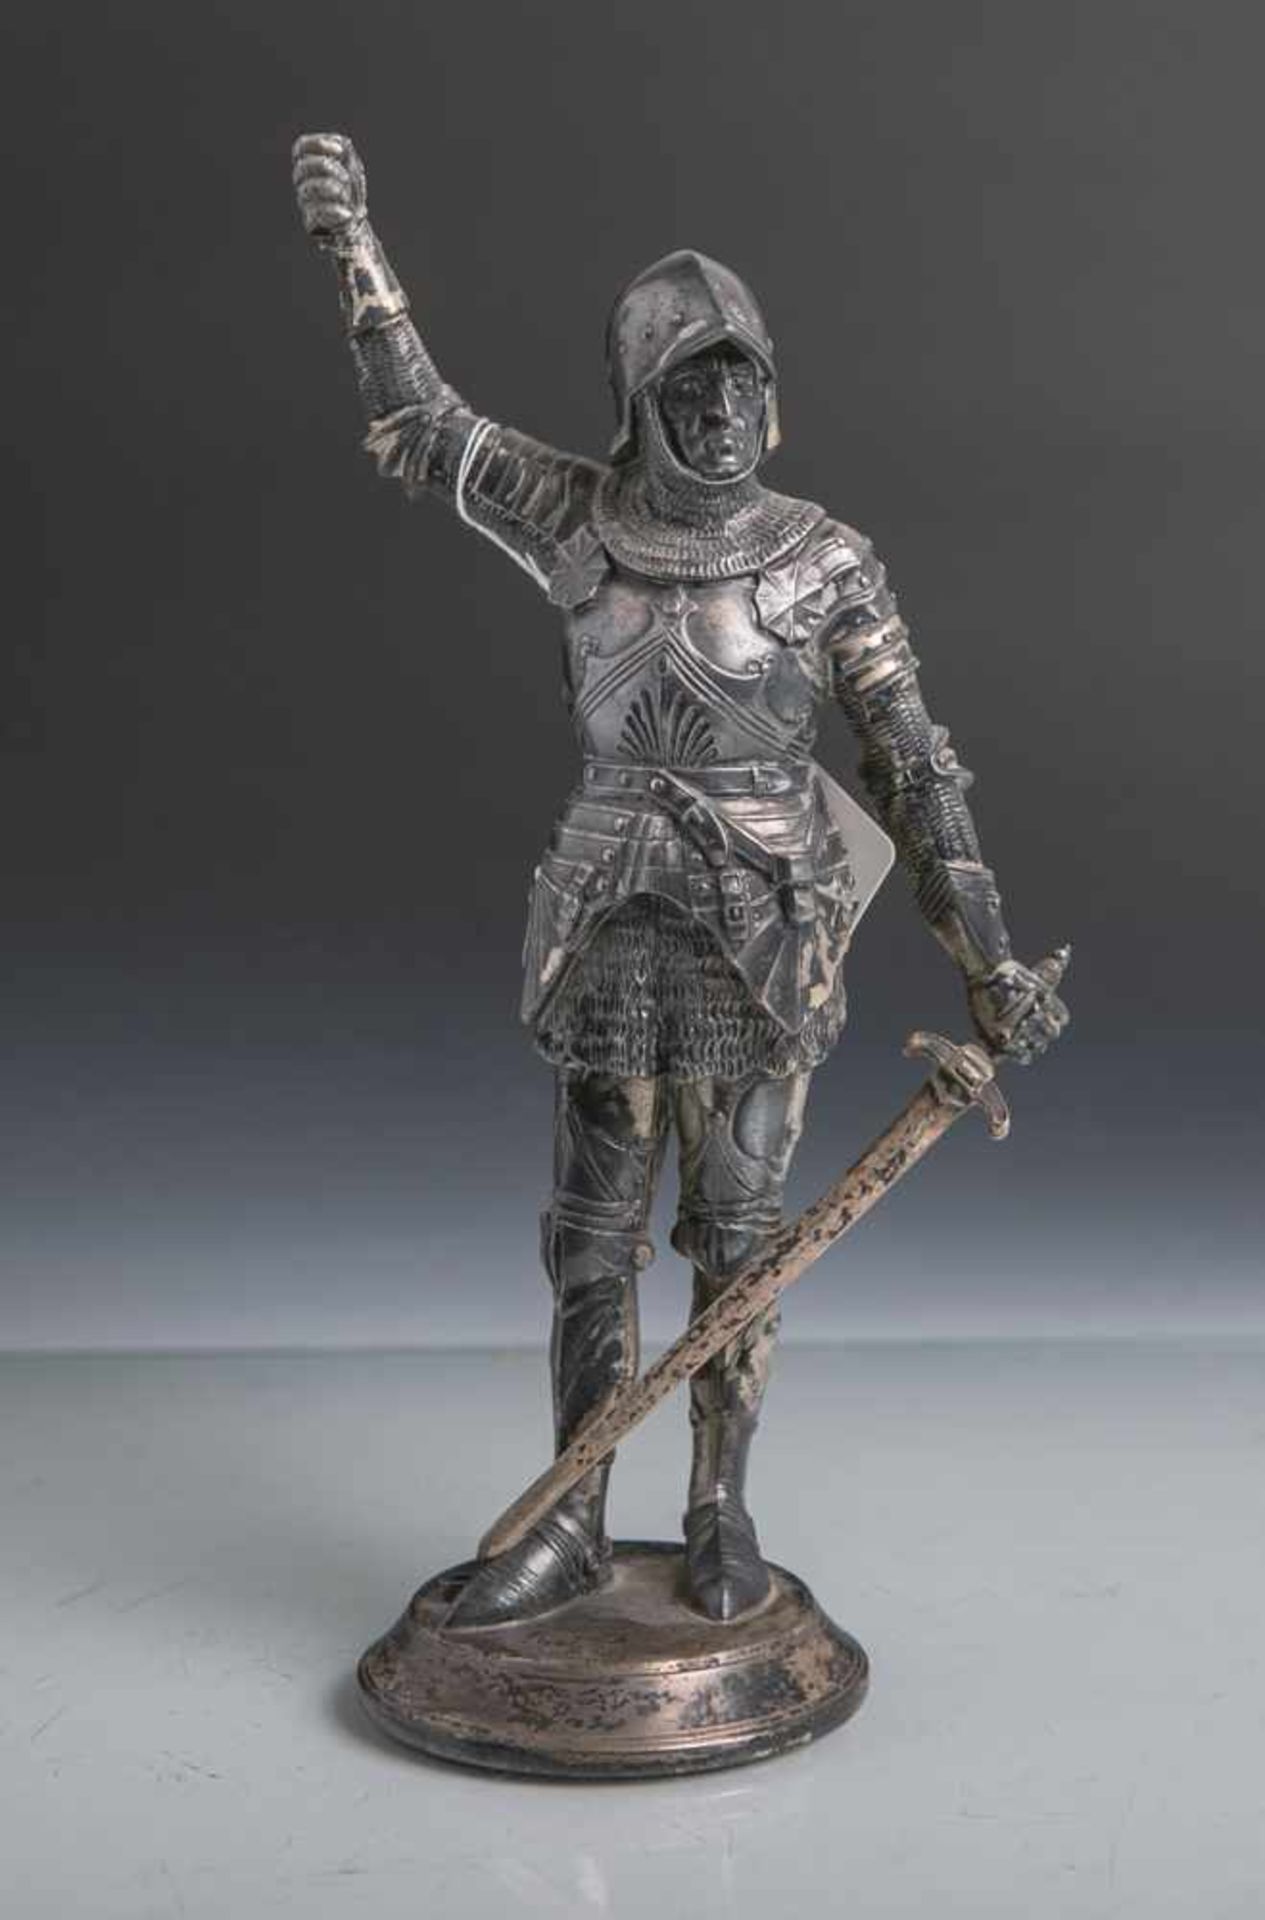 Ritterfigur m. Silber-Auflage, auf einem runden Podest stehender Ritter einen Schwert